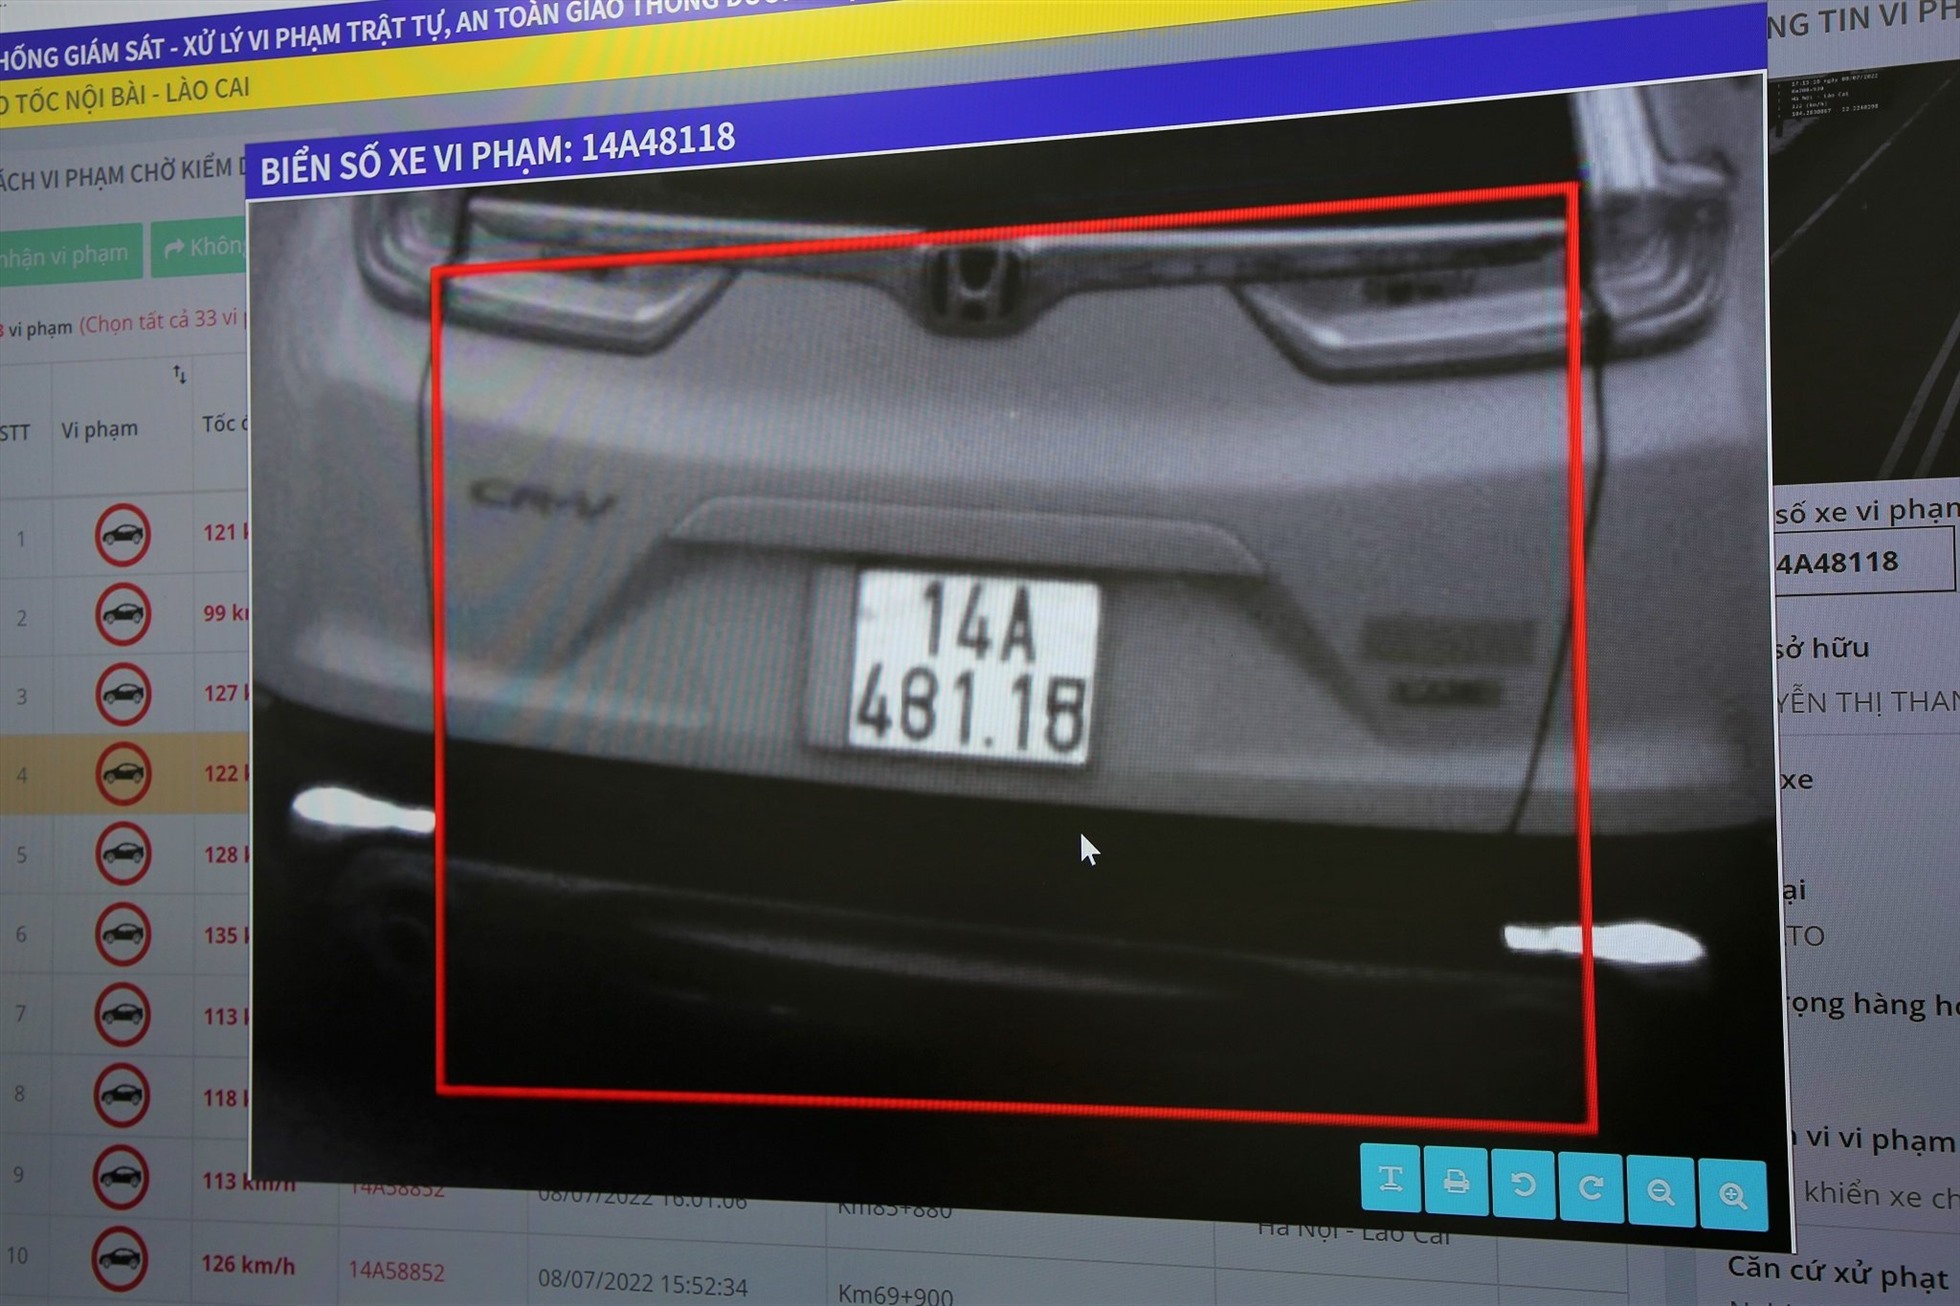 Chiếc xe bị phát hiện sửa biển số để né phạt nguội. Ảnh: Cục CSGT